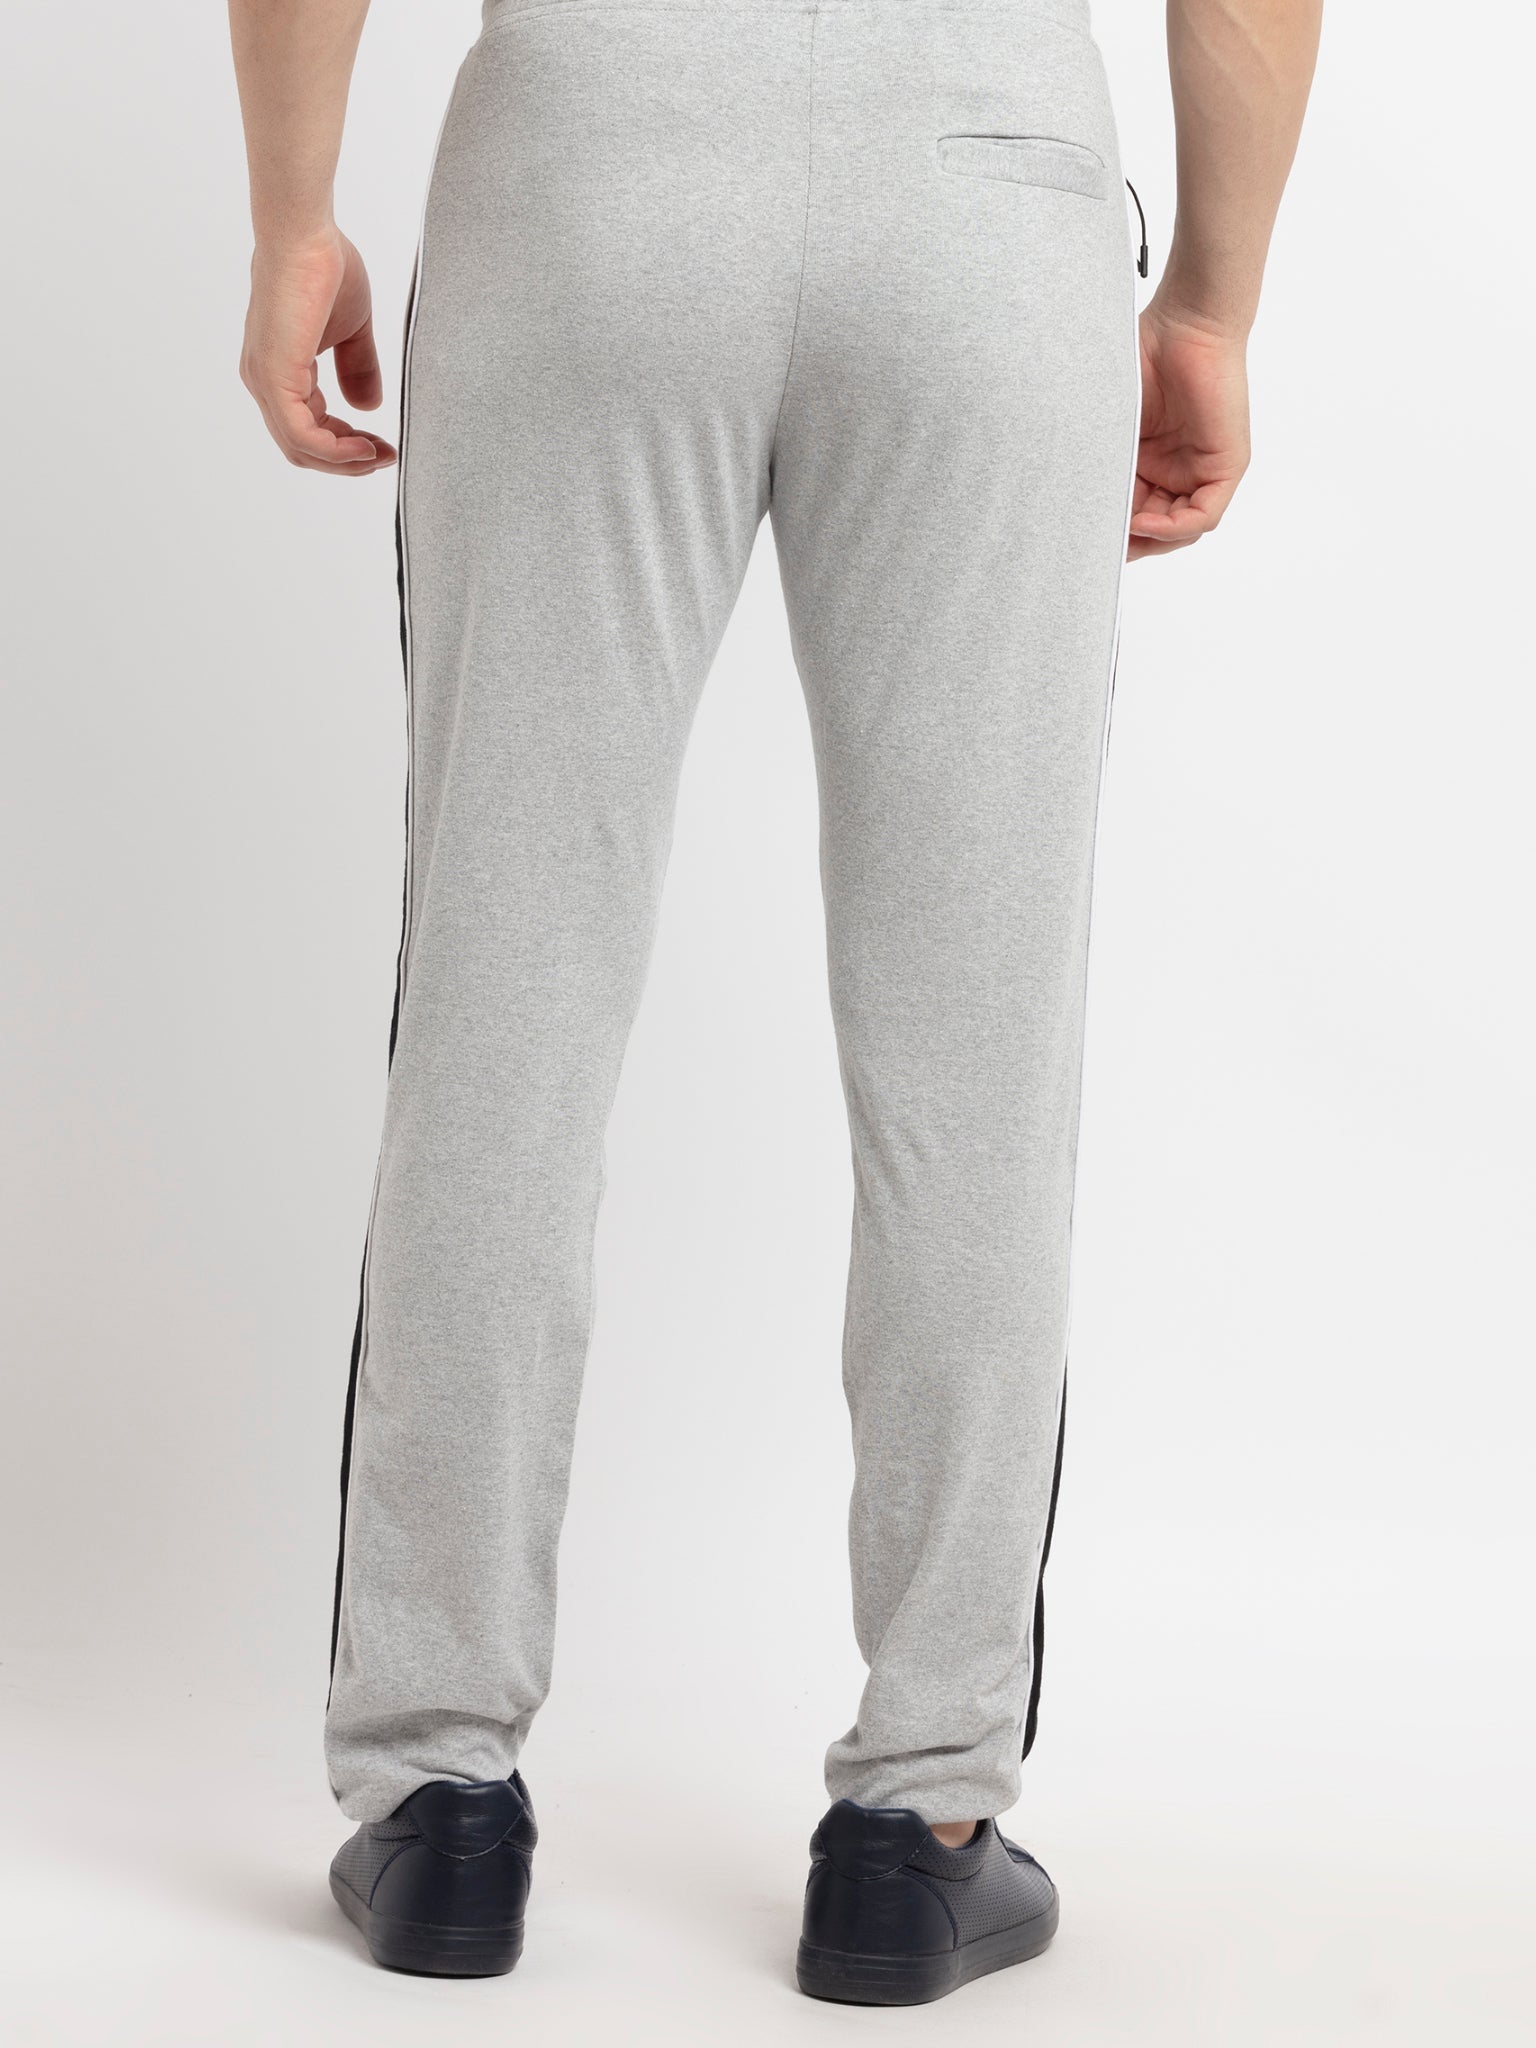 Quần Dài Chính Hãng - Adidas Men's BTS Tapered Pants ''Grey''- FJ0709